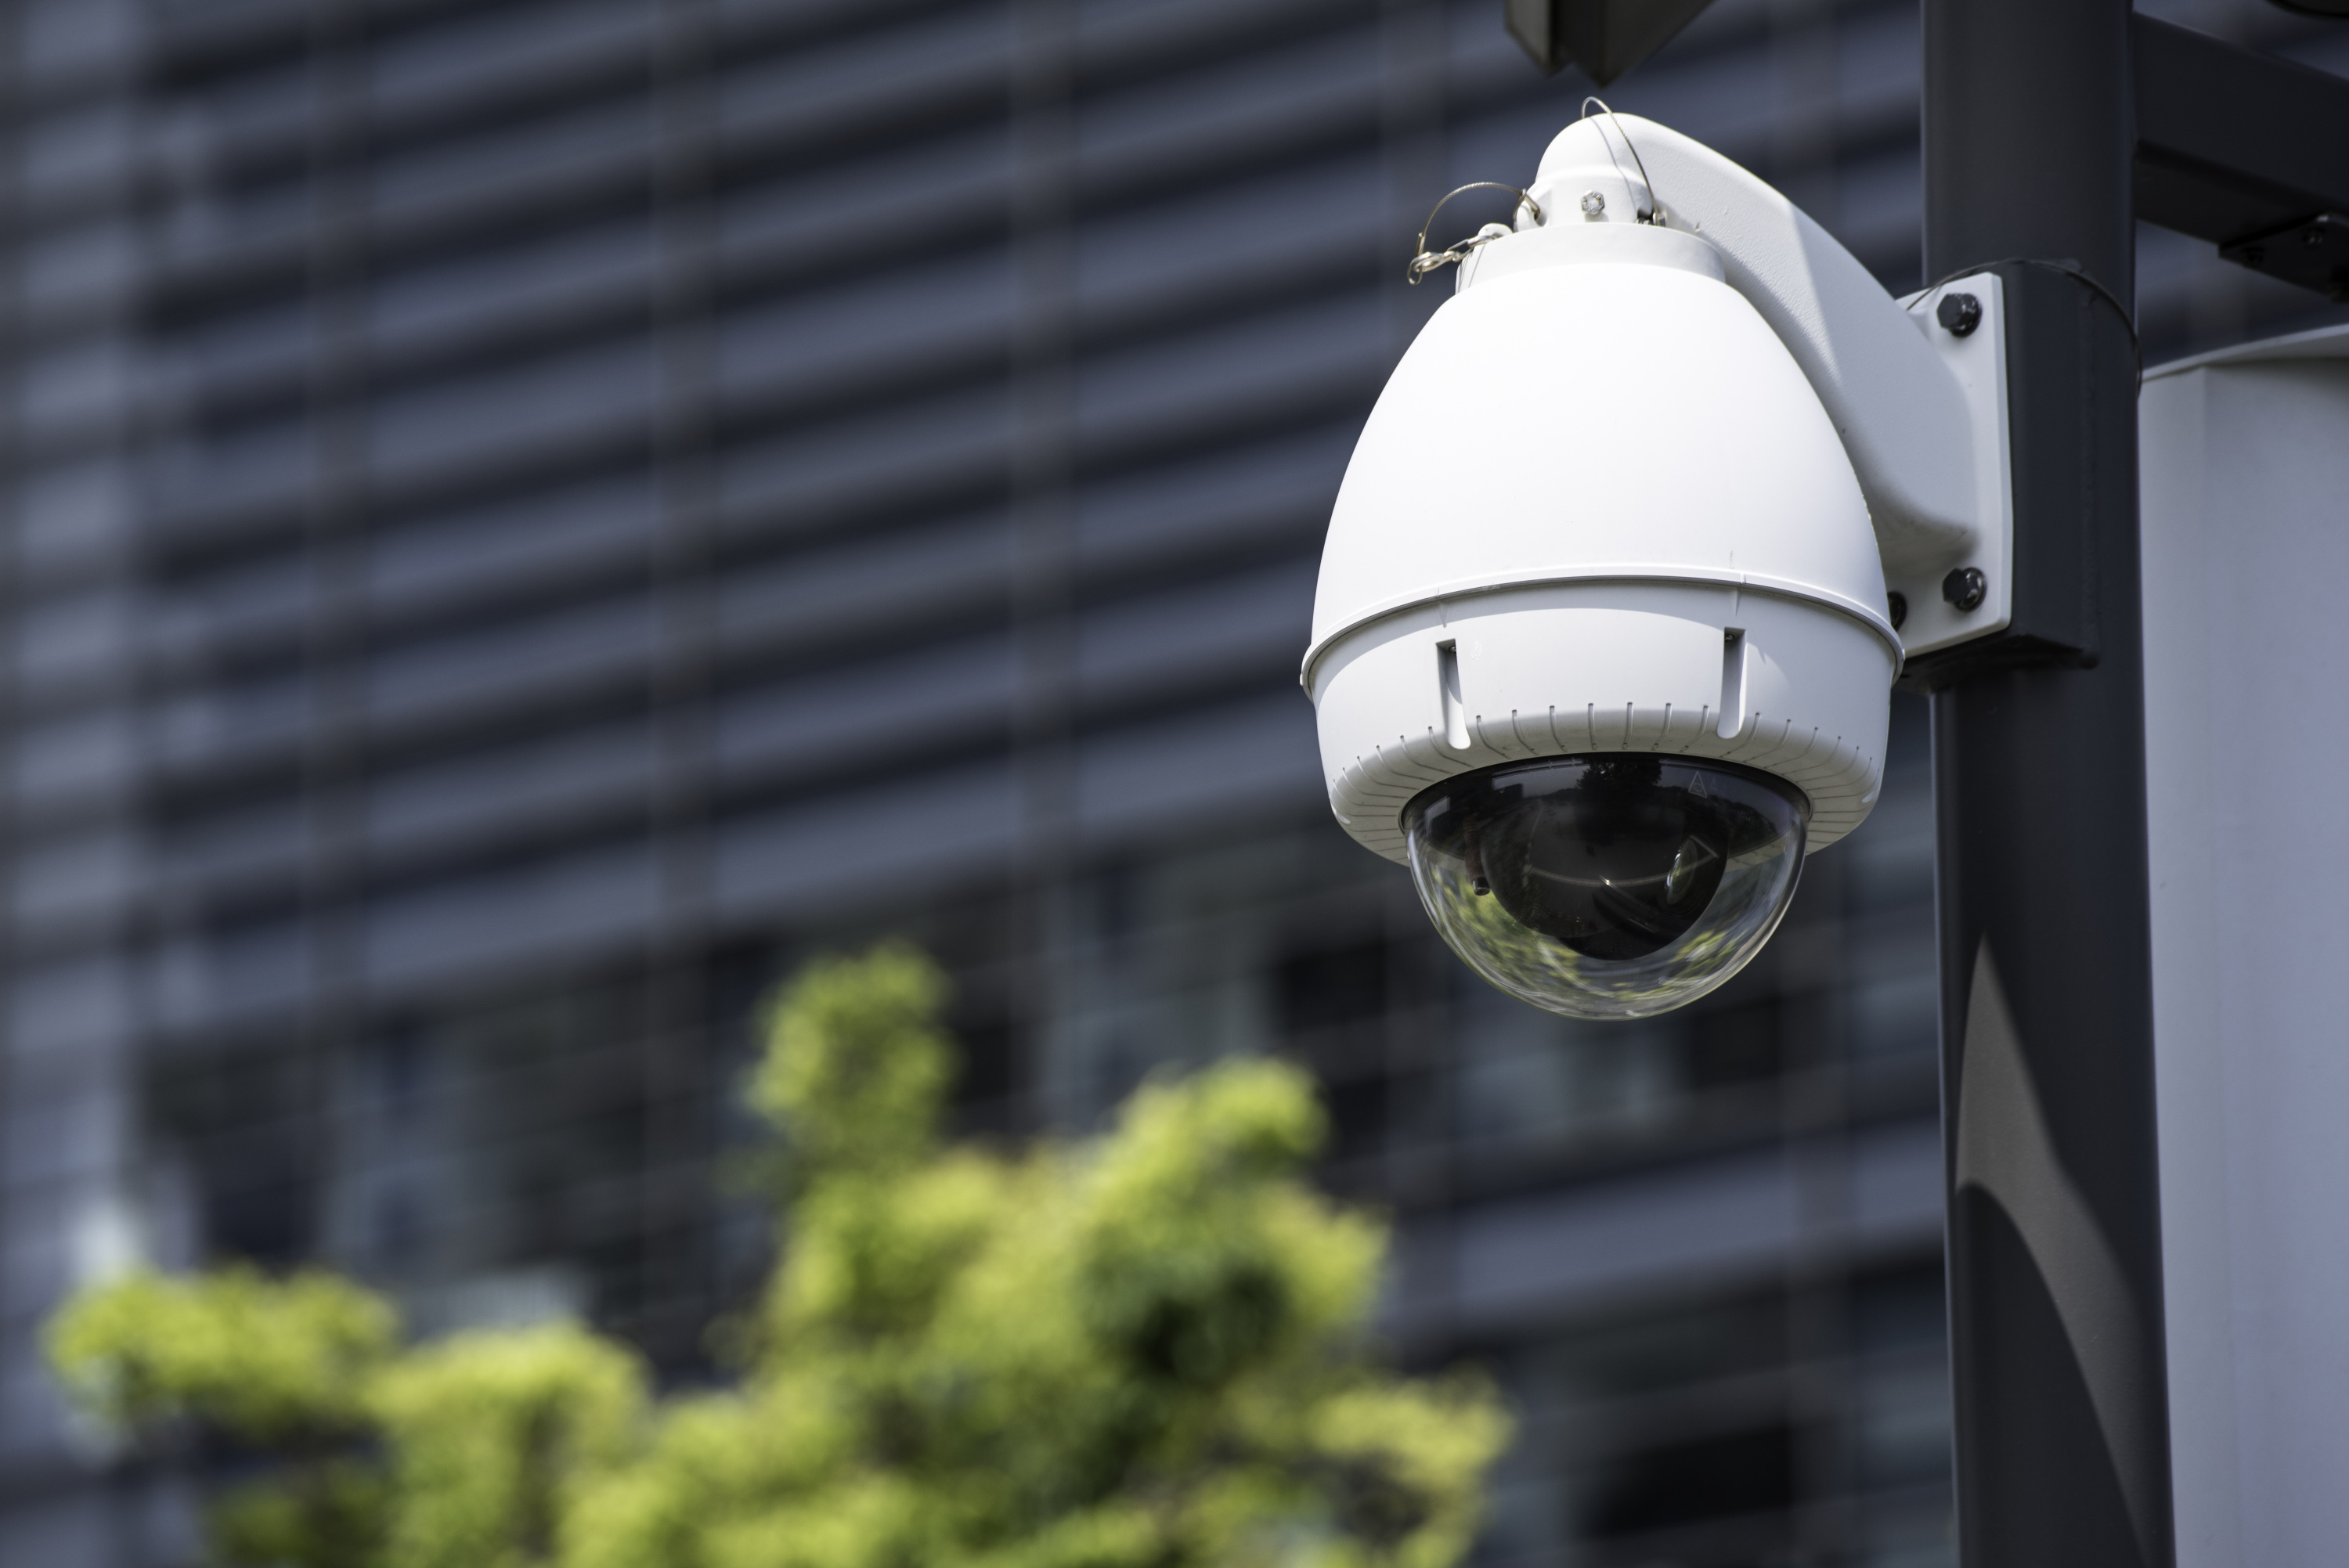 Comment accéder à une caméra de surveillance à distance ?